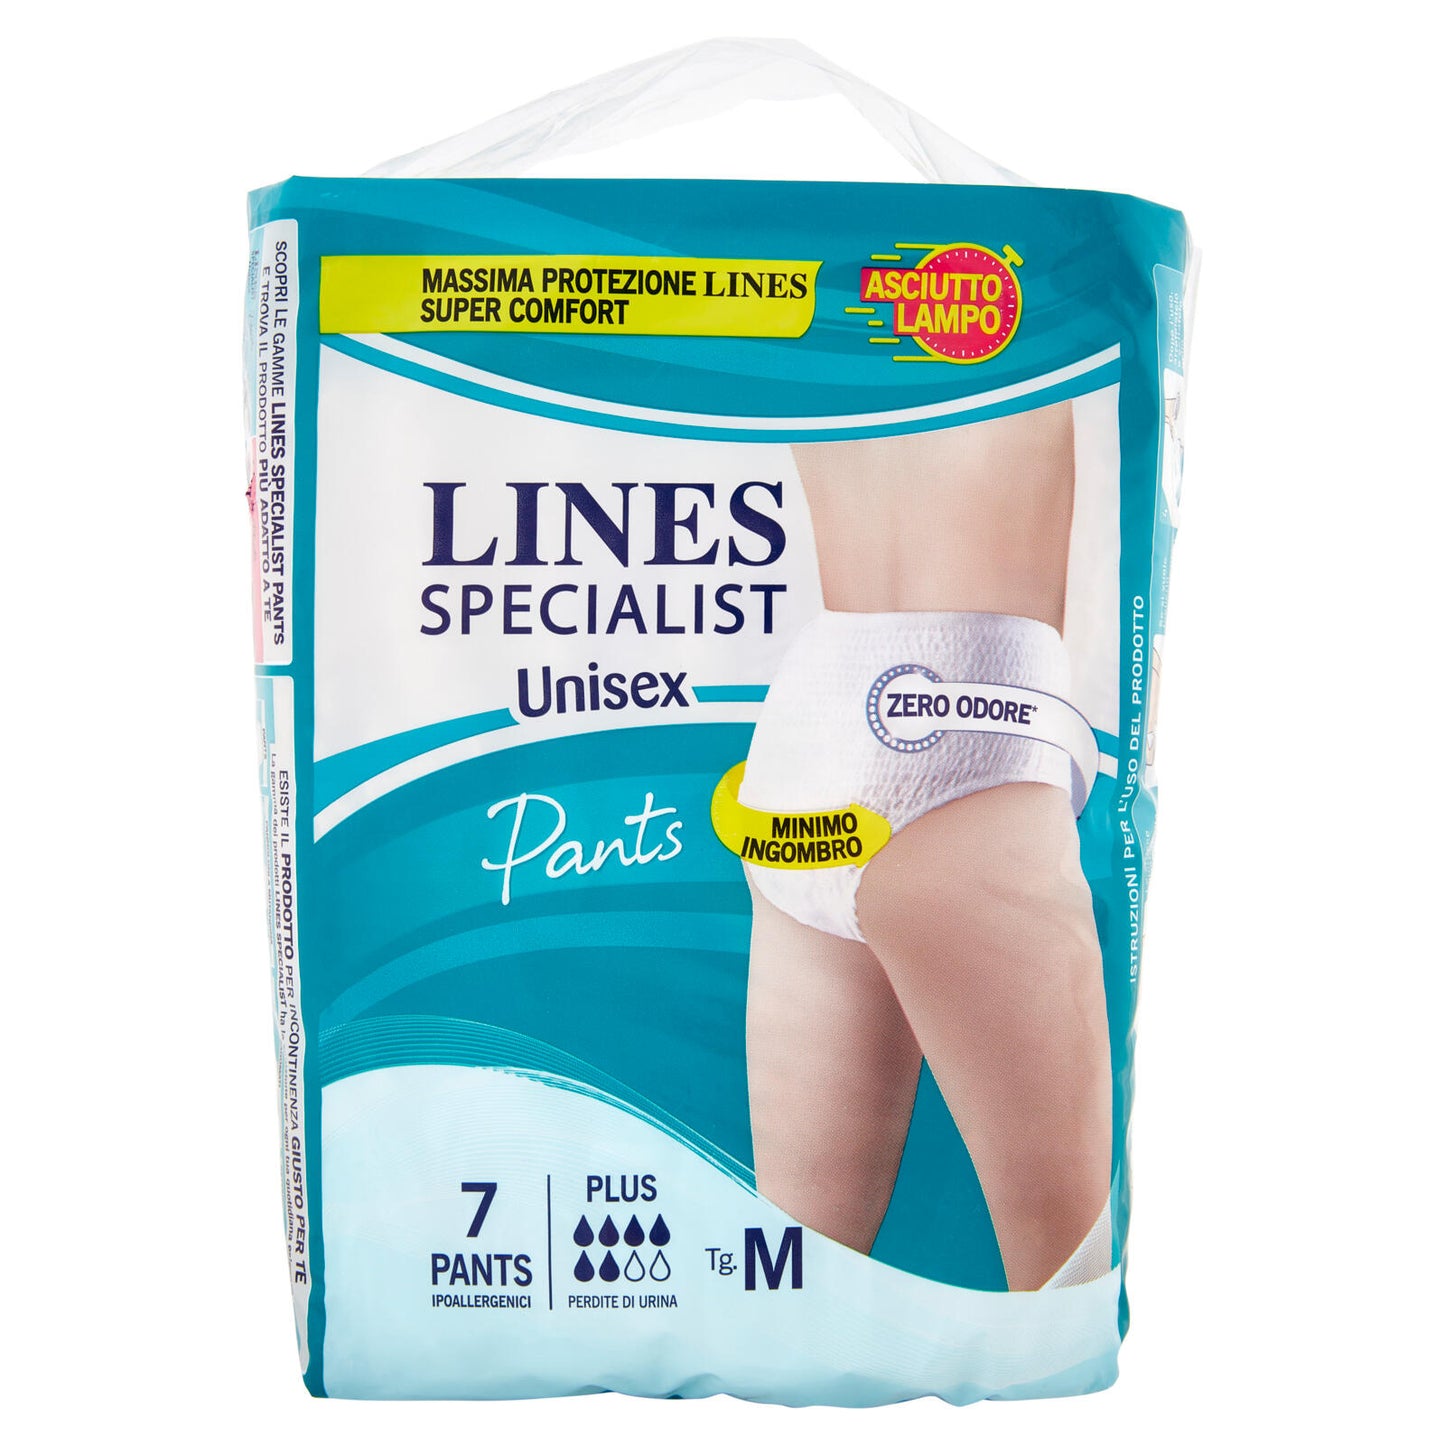 Lines Specialist Unisex Plus Pants Ipoallergenici Tg. M 7 pz ->